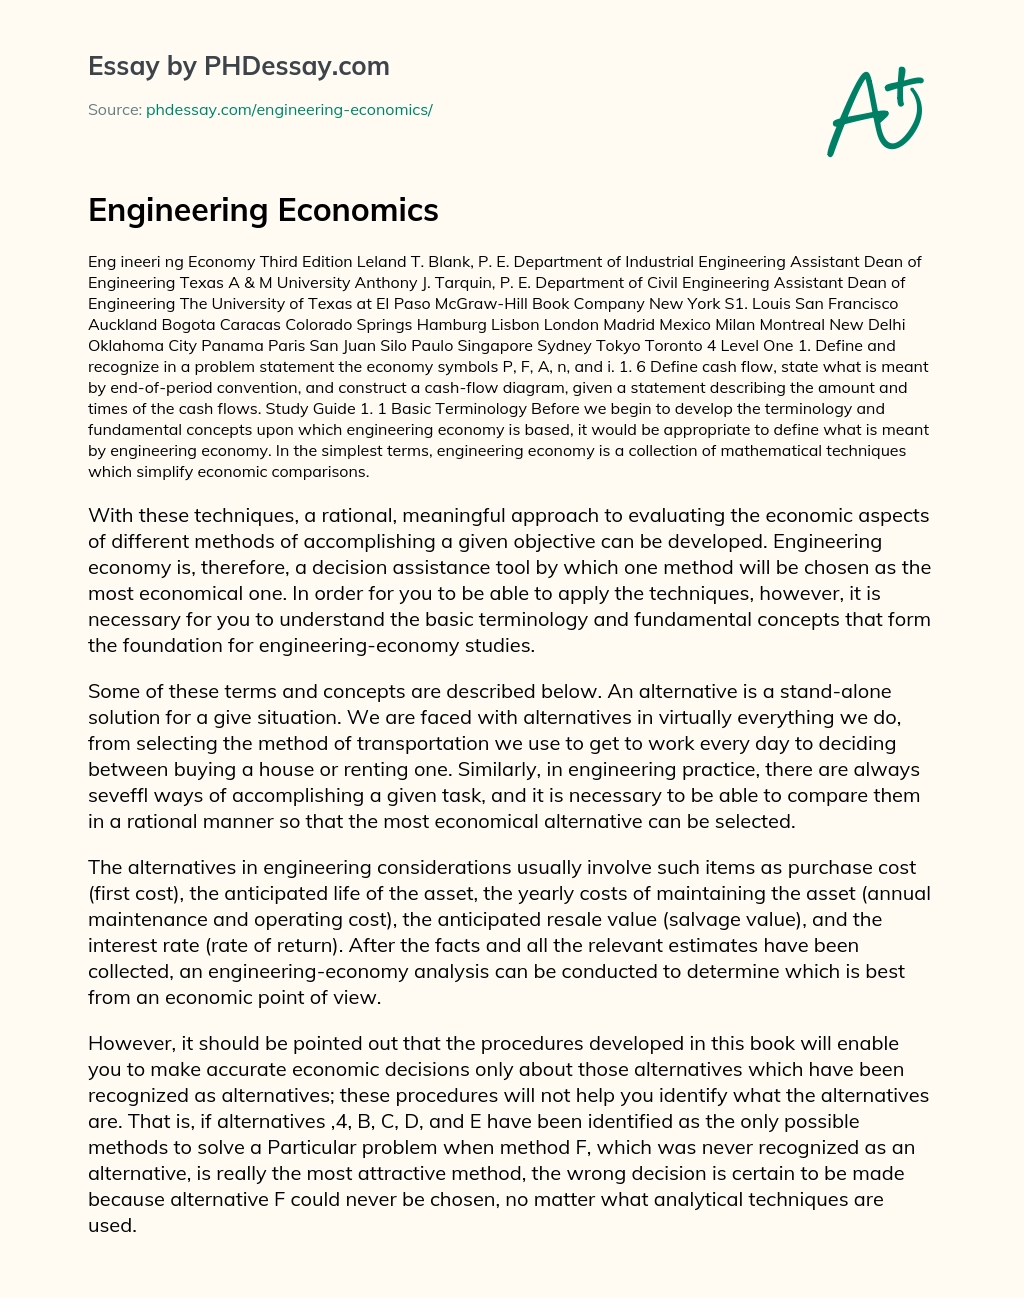 Engineering Economics essay